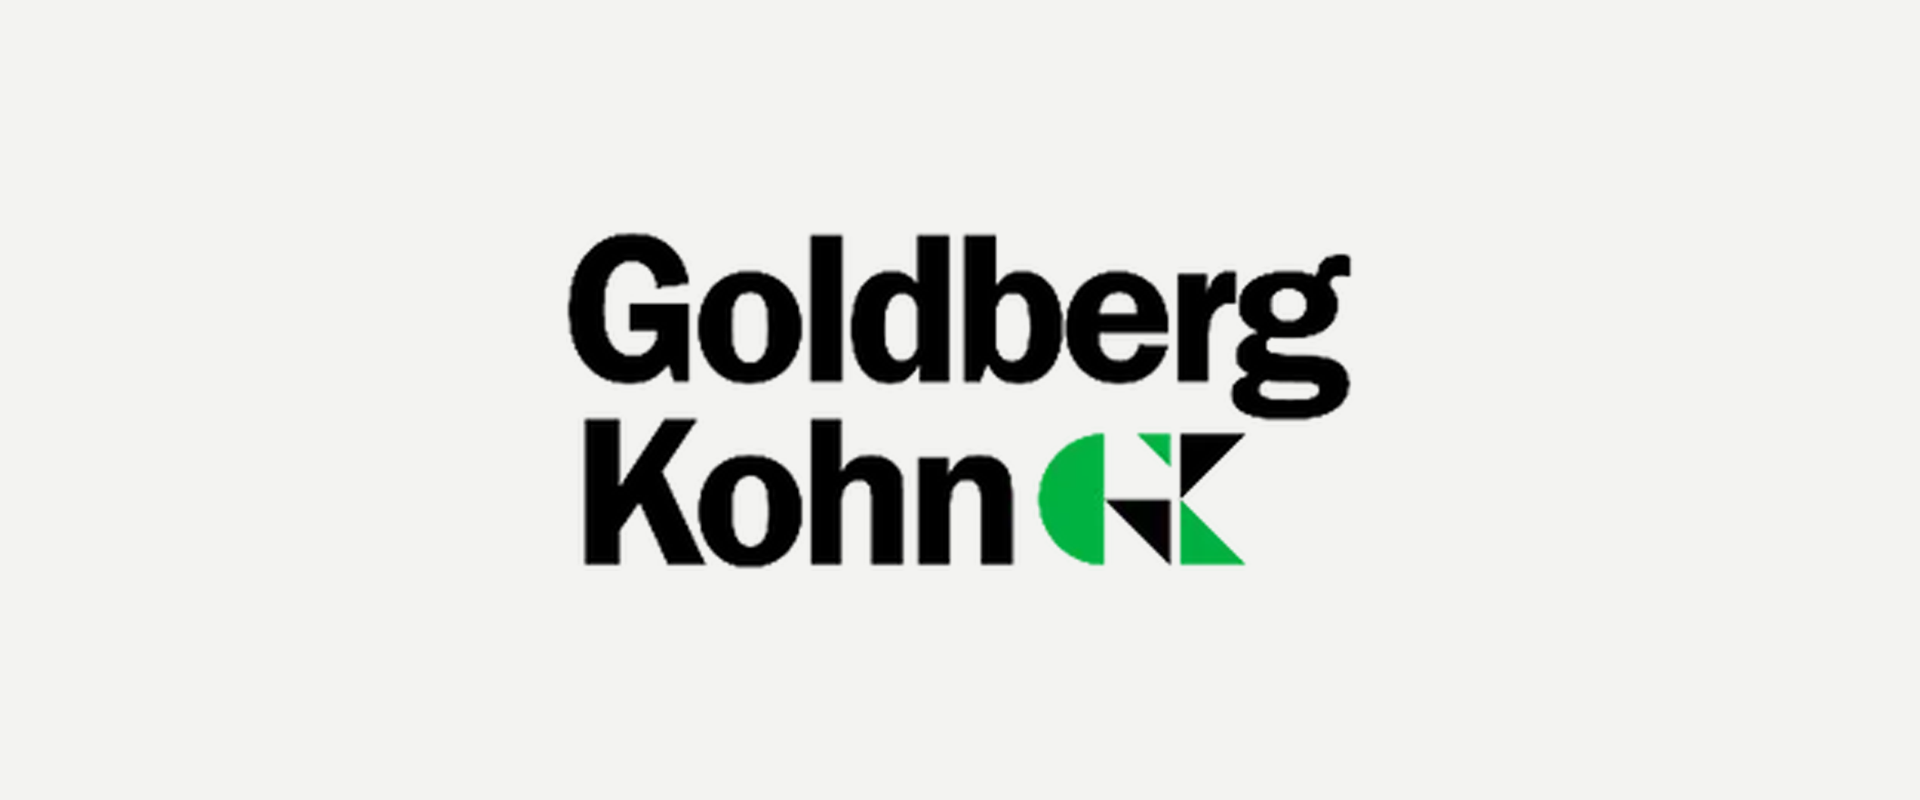 Media item displaying Goldberg Kohn